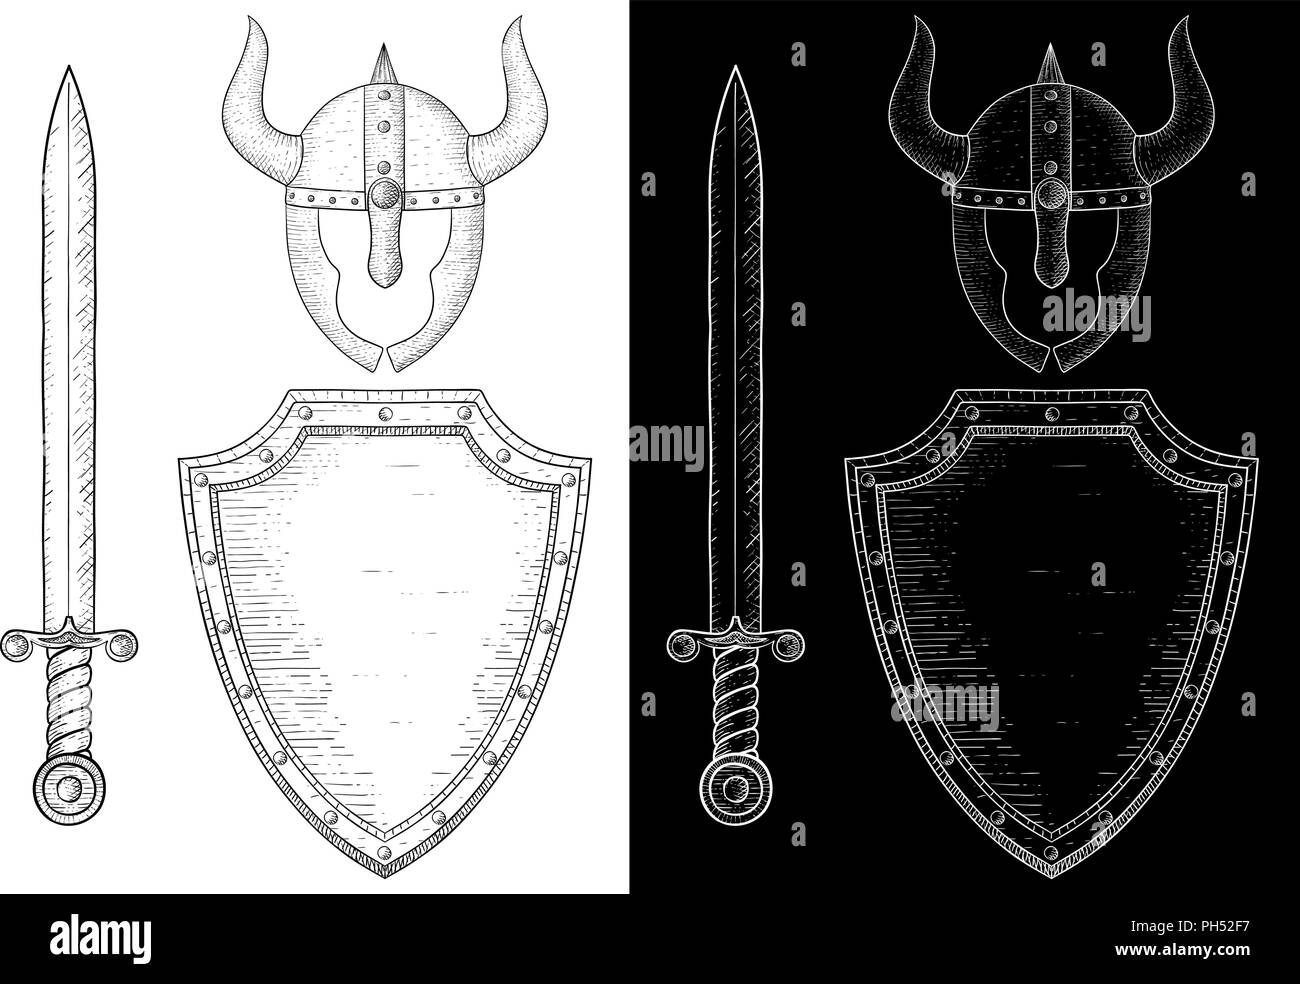 L'équipement guerrier médiéval - l'épée, le bouclier et le casque. Croquis dessinés à la main, Illustration de Vecteur